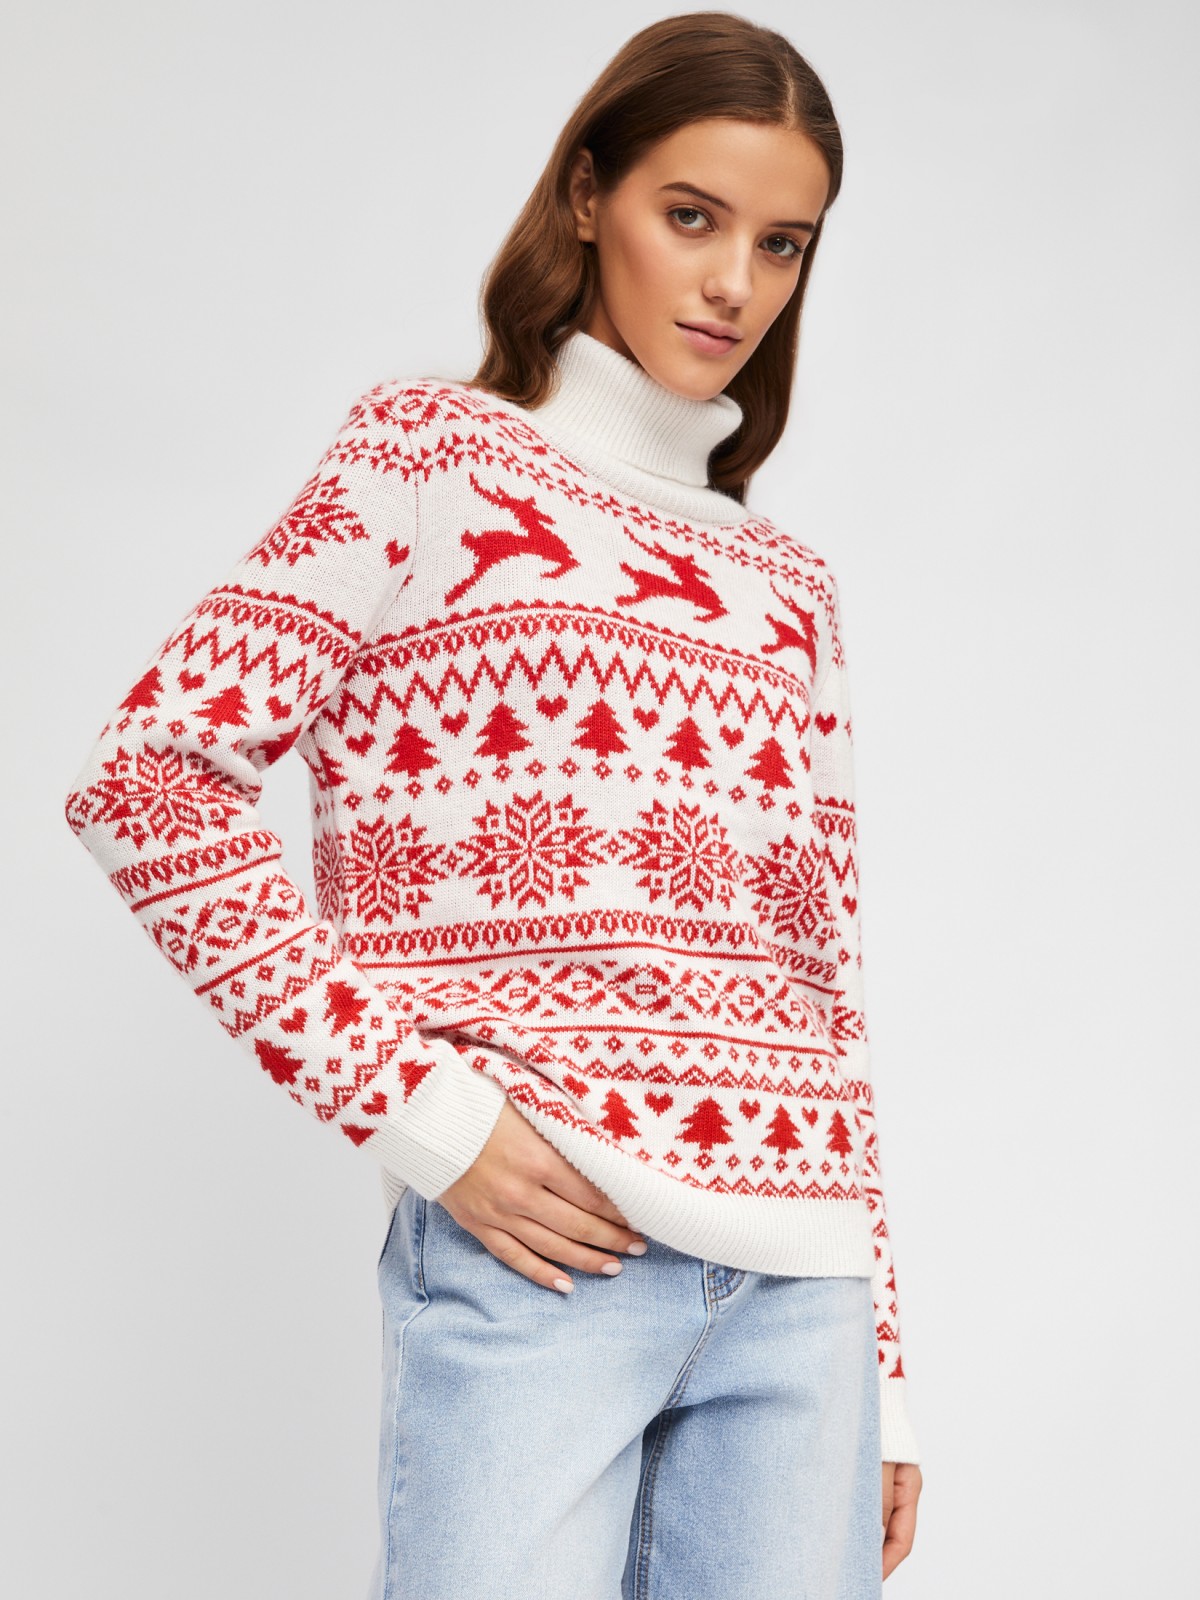 Вязаный шерстяной свитер с новогодним узором с оленями